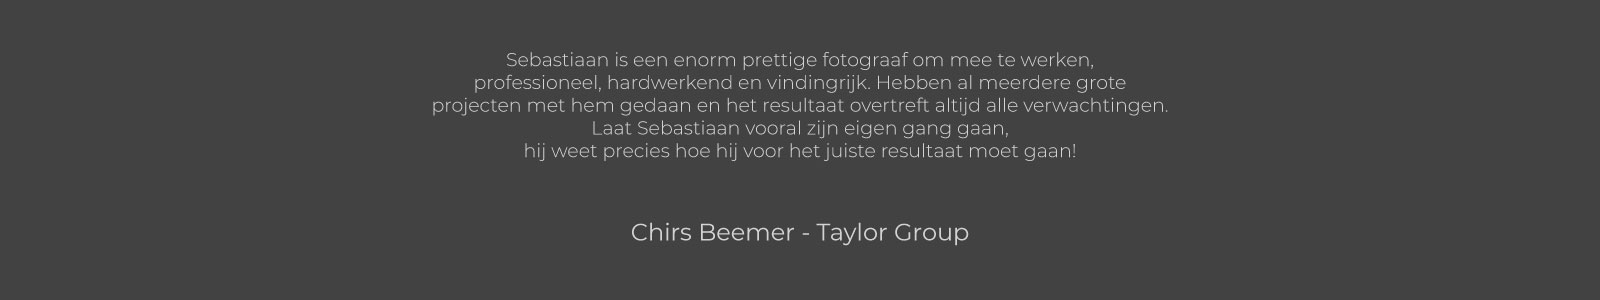 Chris Beemer Taylor Group